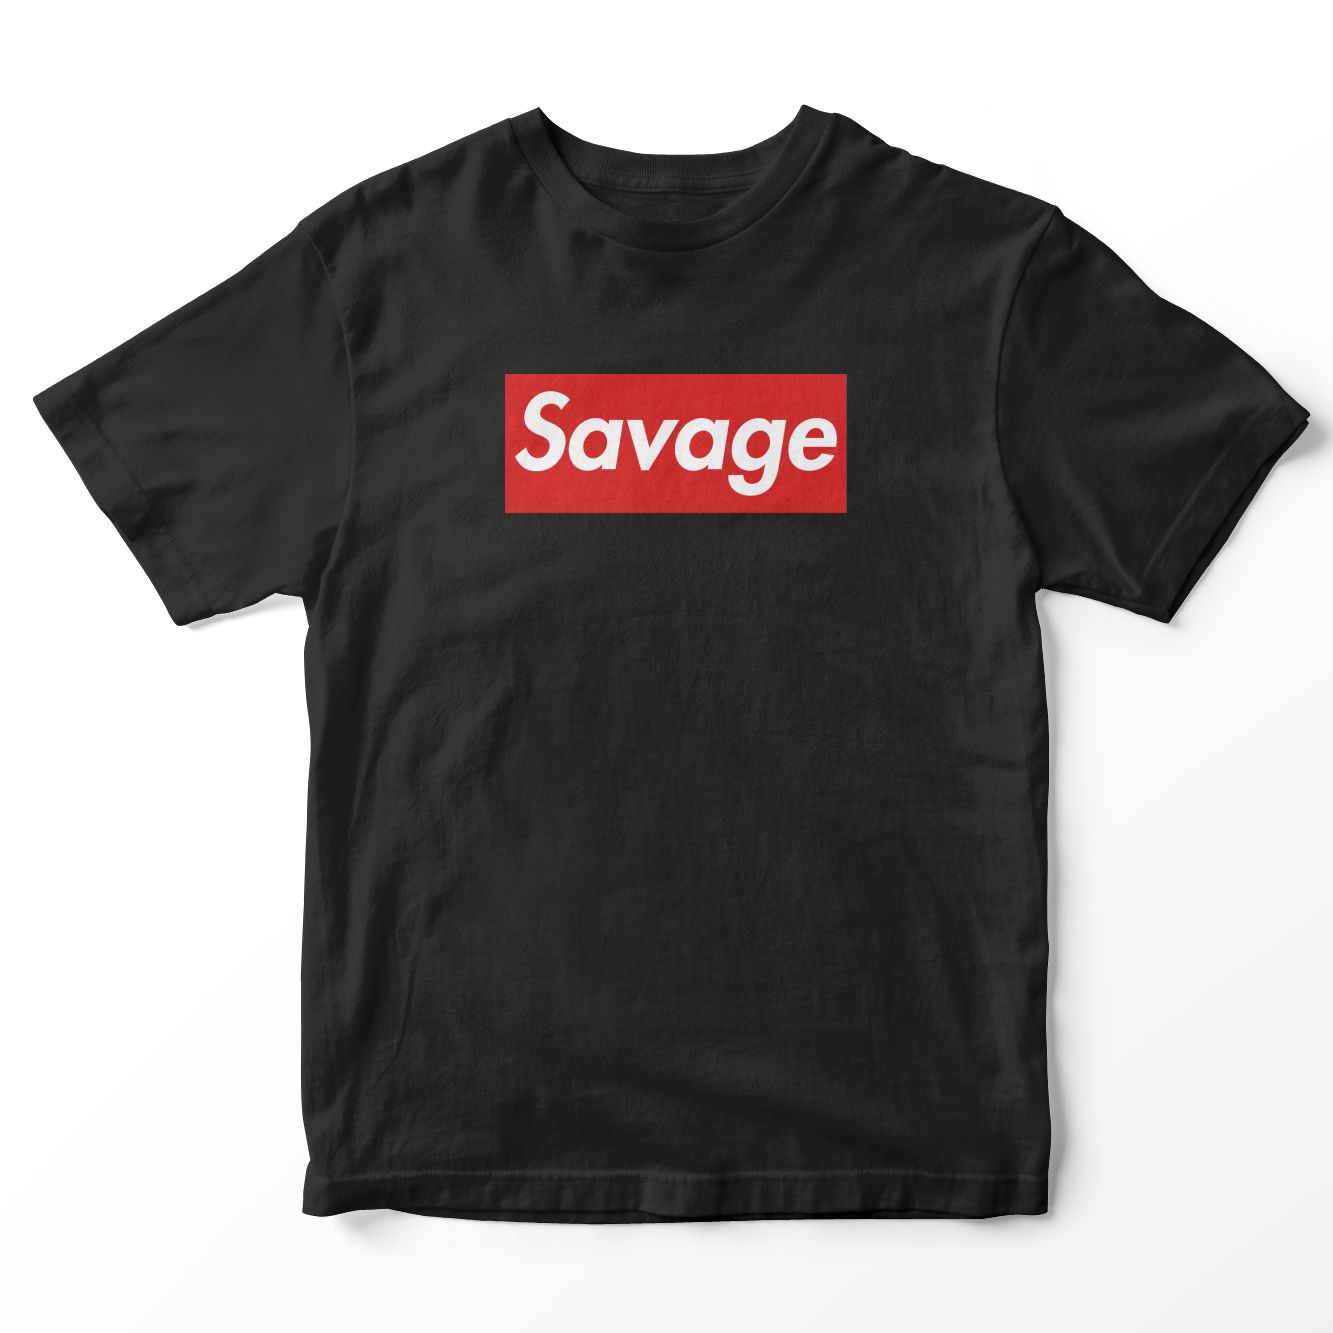 Savage T-shirt - Provoke India